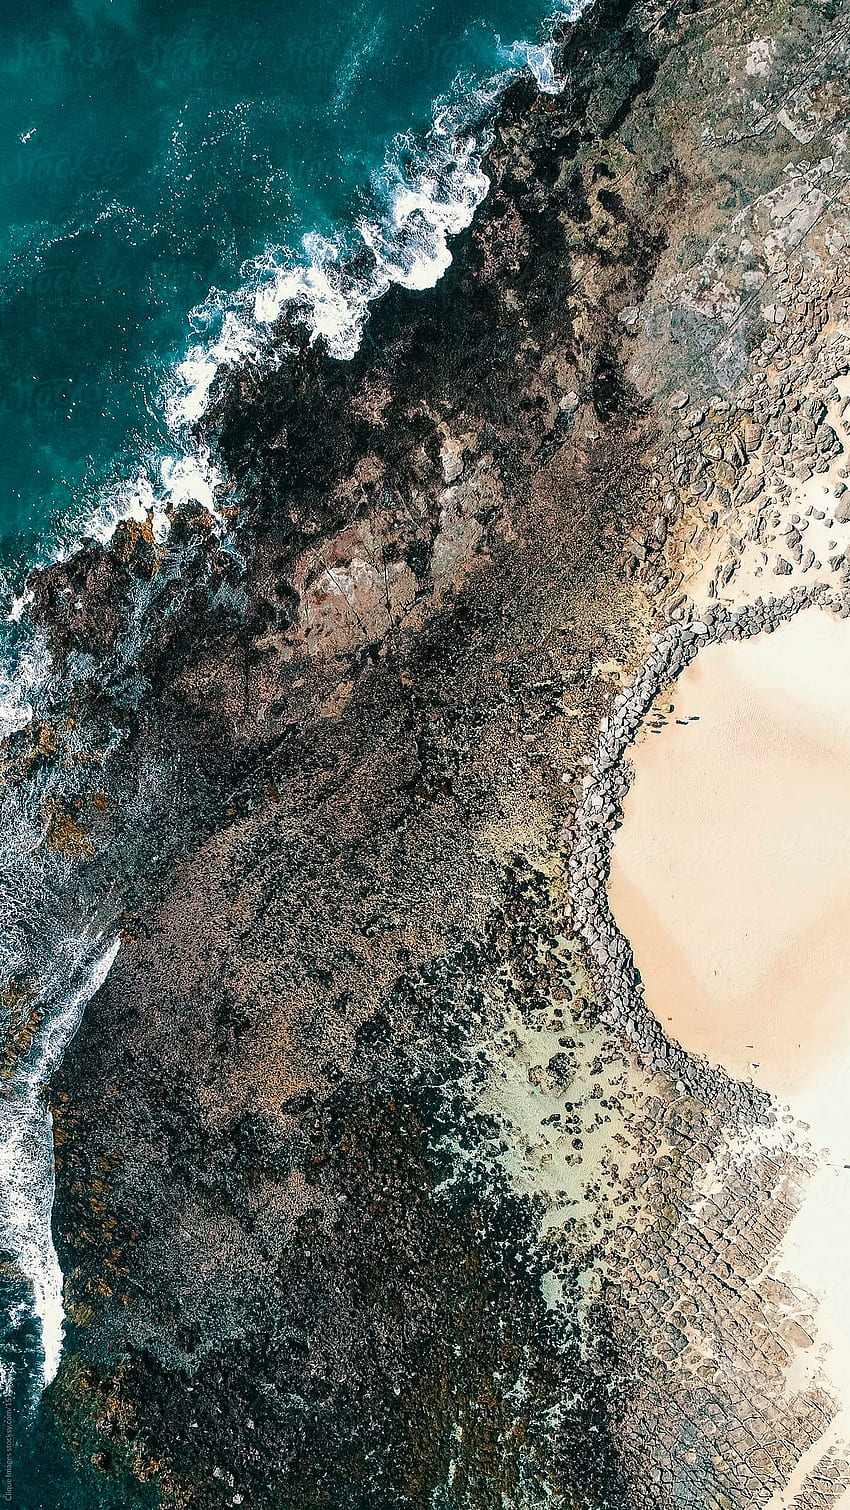 Costa rocosa vista desde arriba por Clique - Drone, paisaje, costa rocosa fondo de pantalla del teléfono